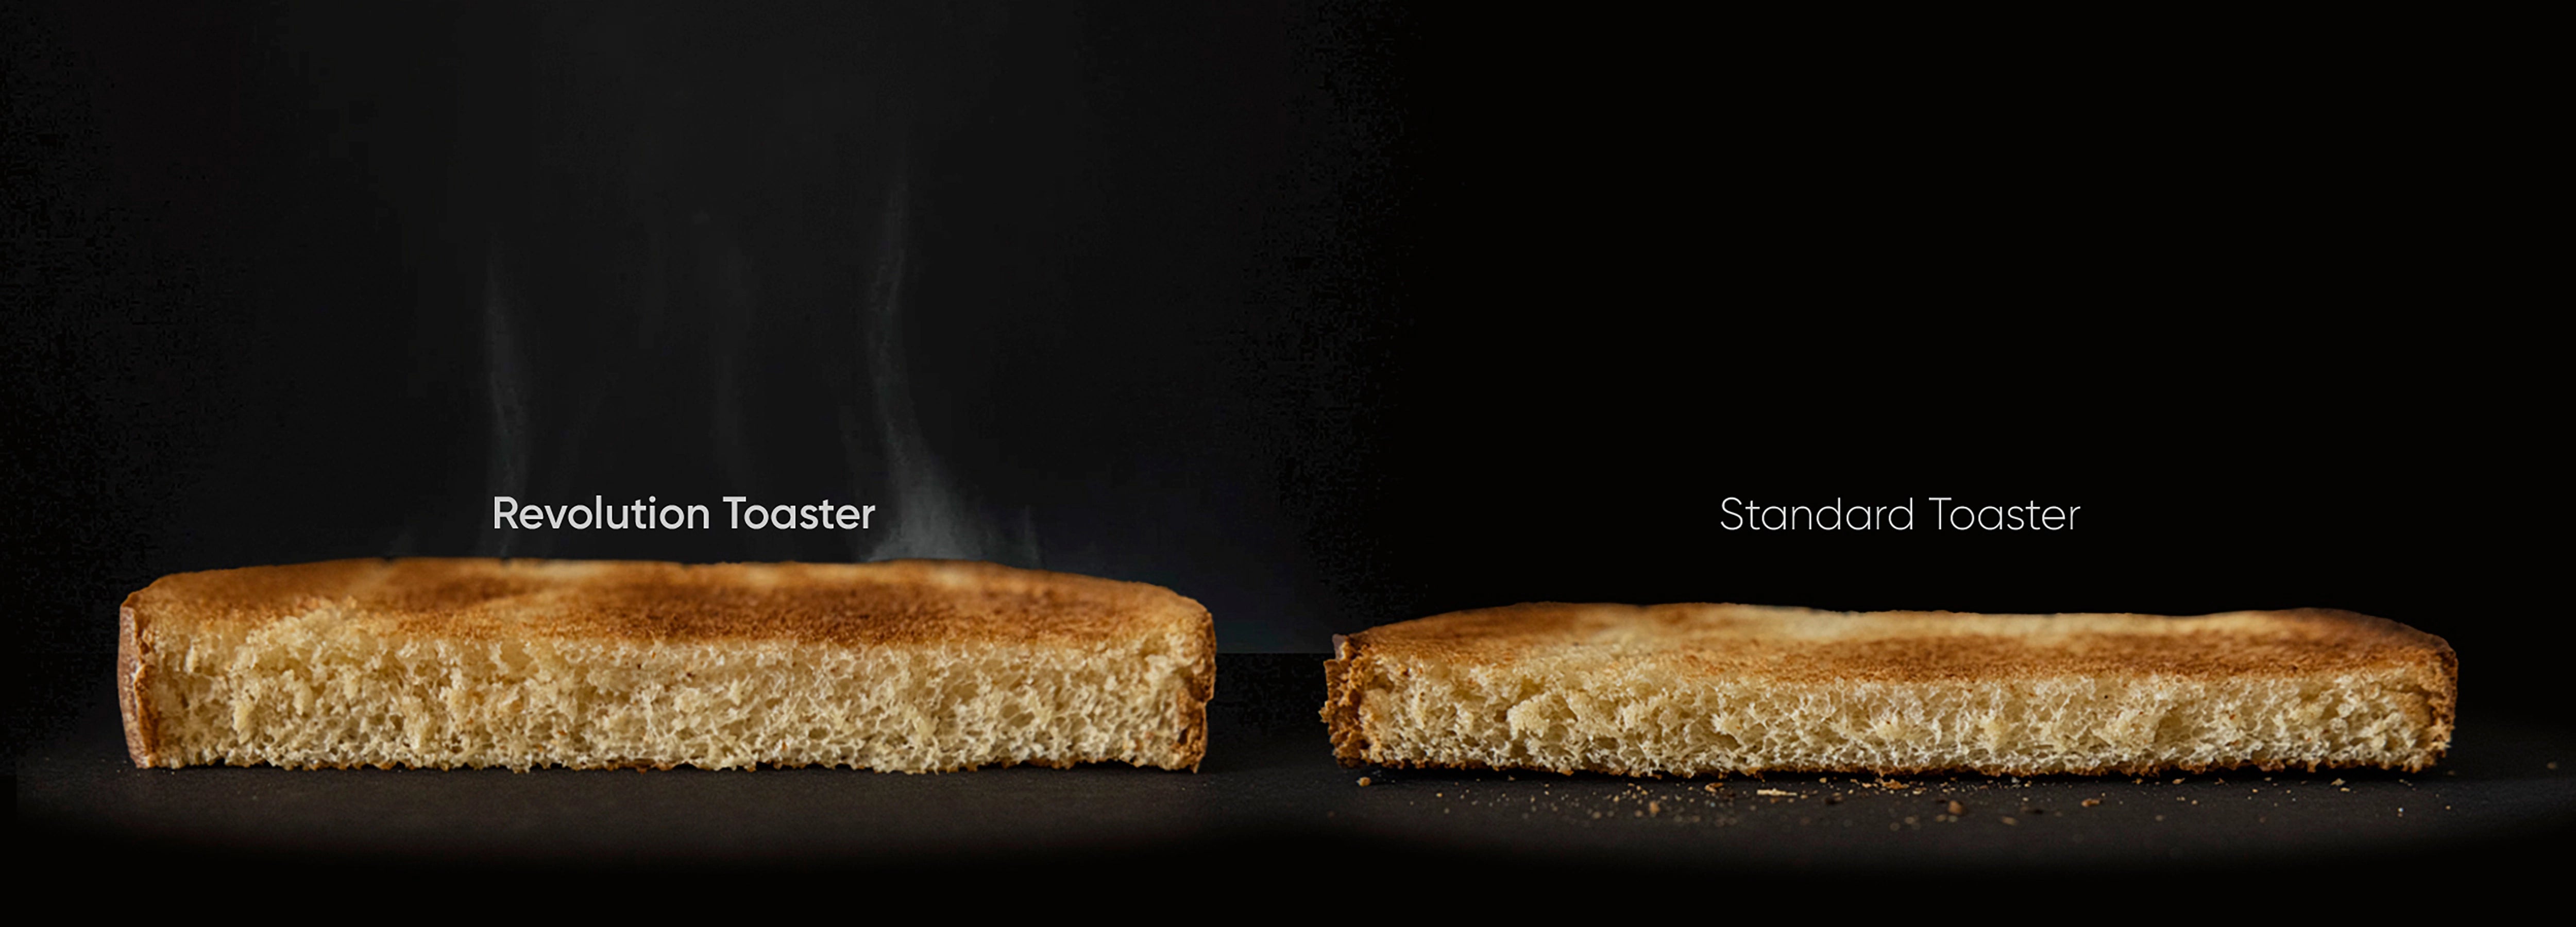 Revolution Toaster: Toasty Future